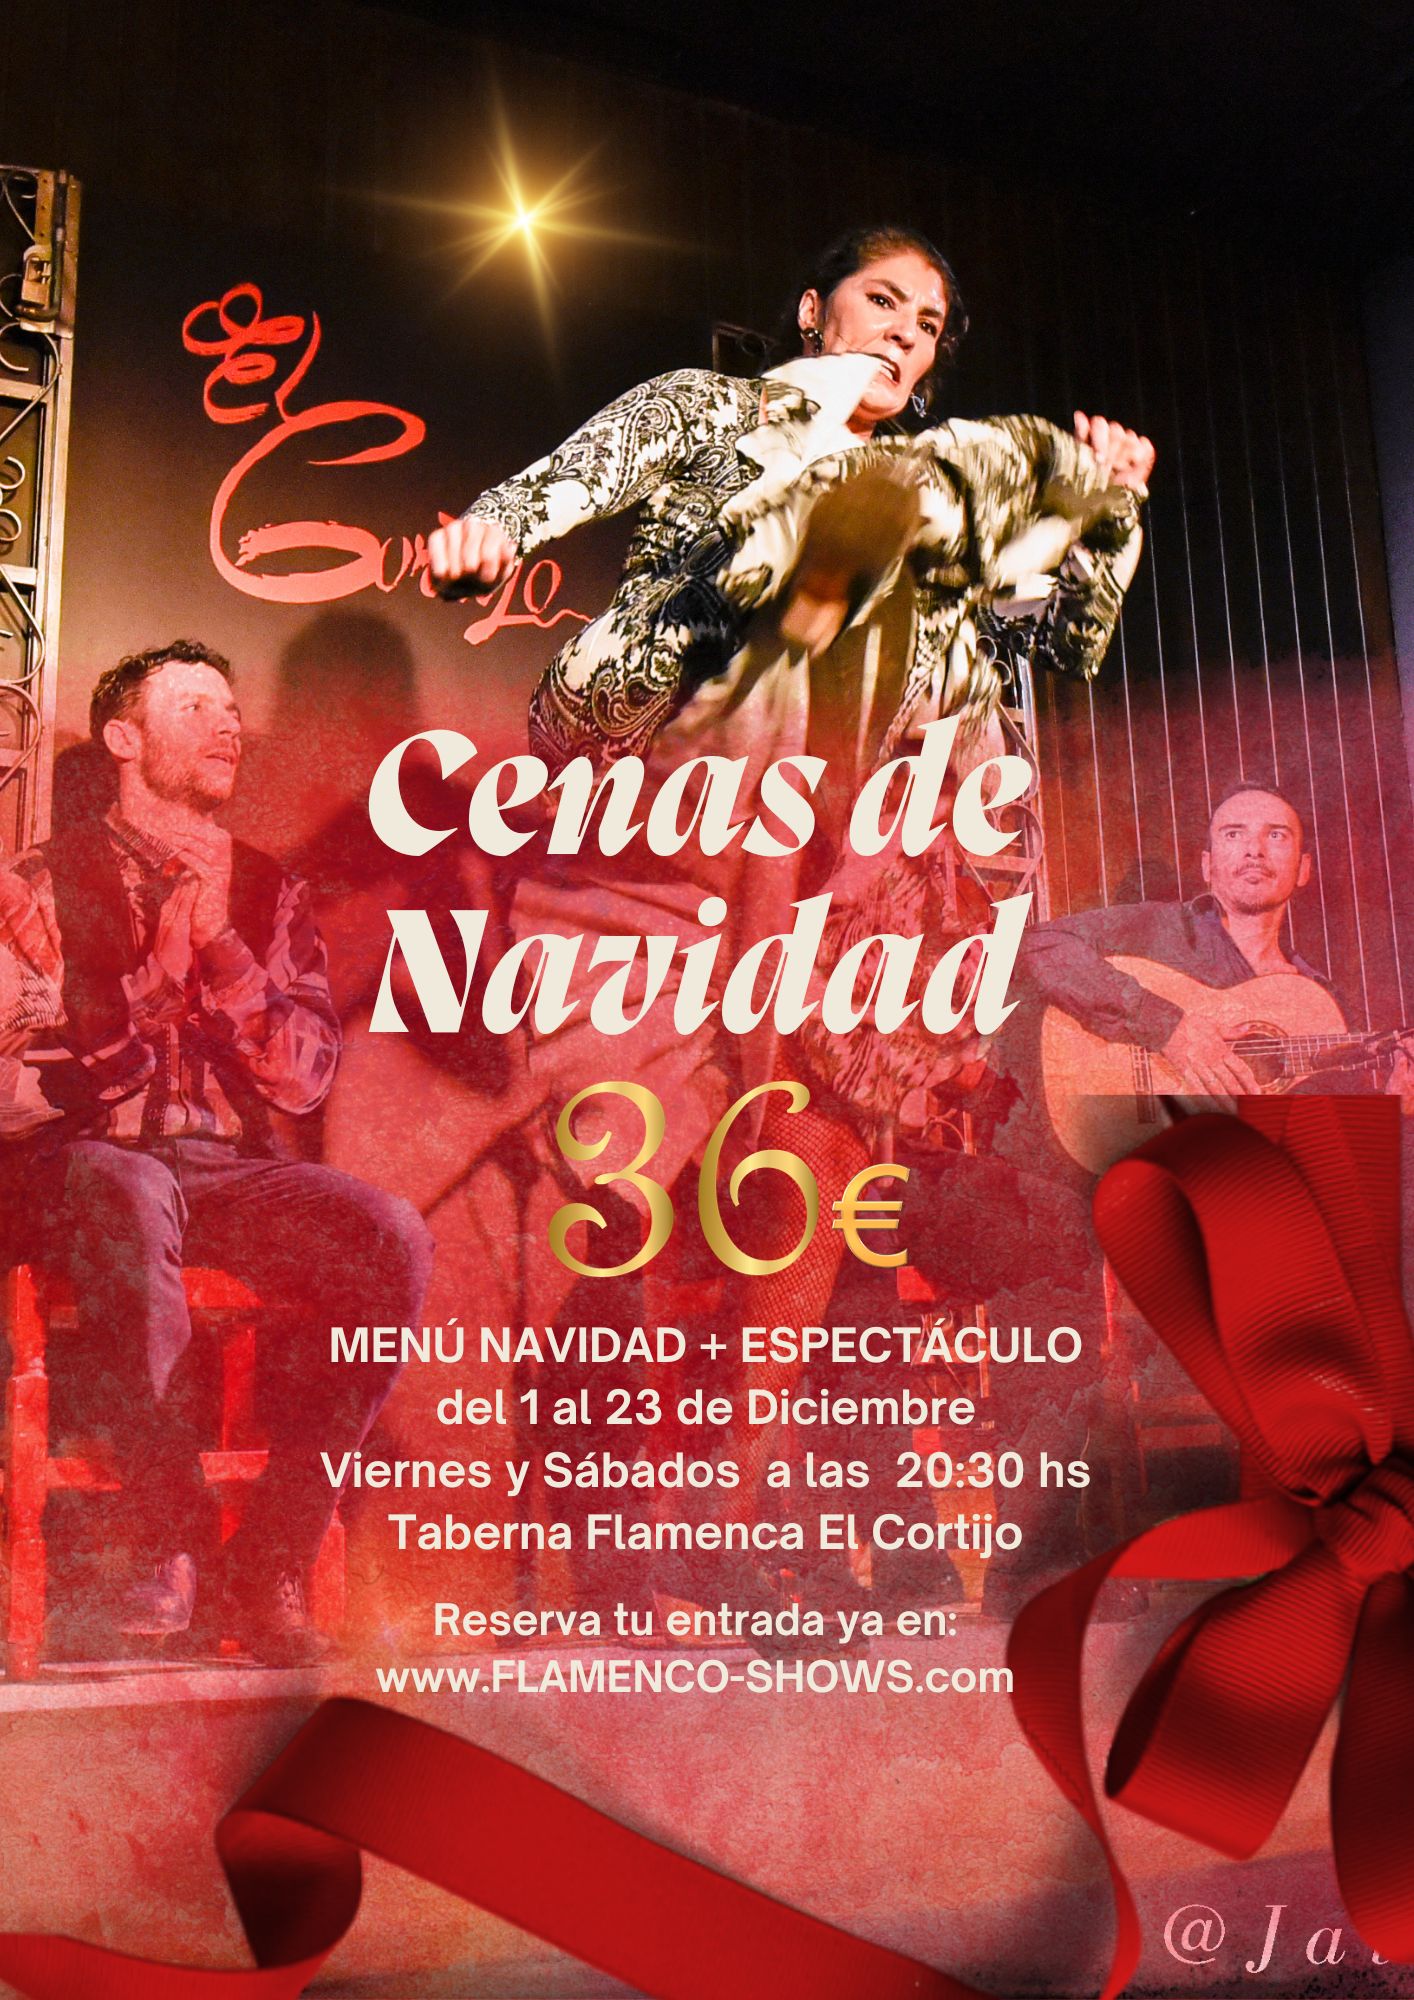 Cenas de navidad en Madrid en Tablao Flamenco El Cortijo